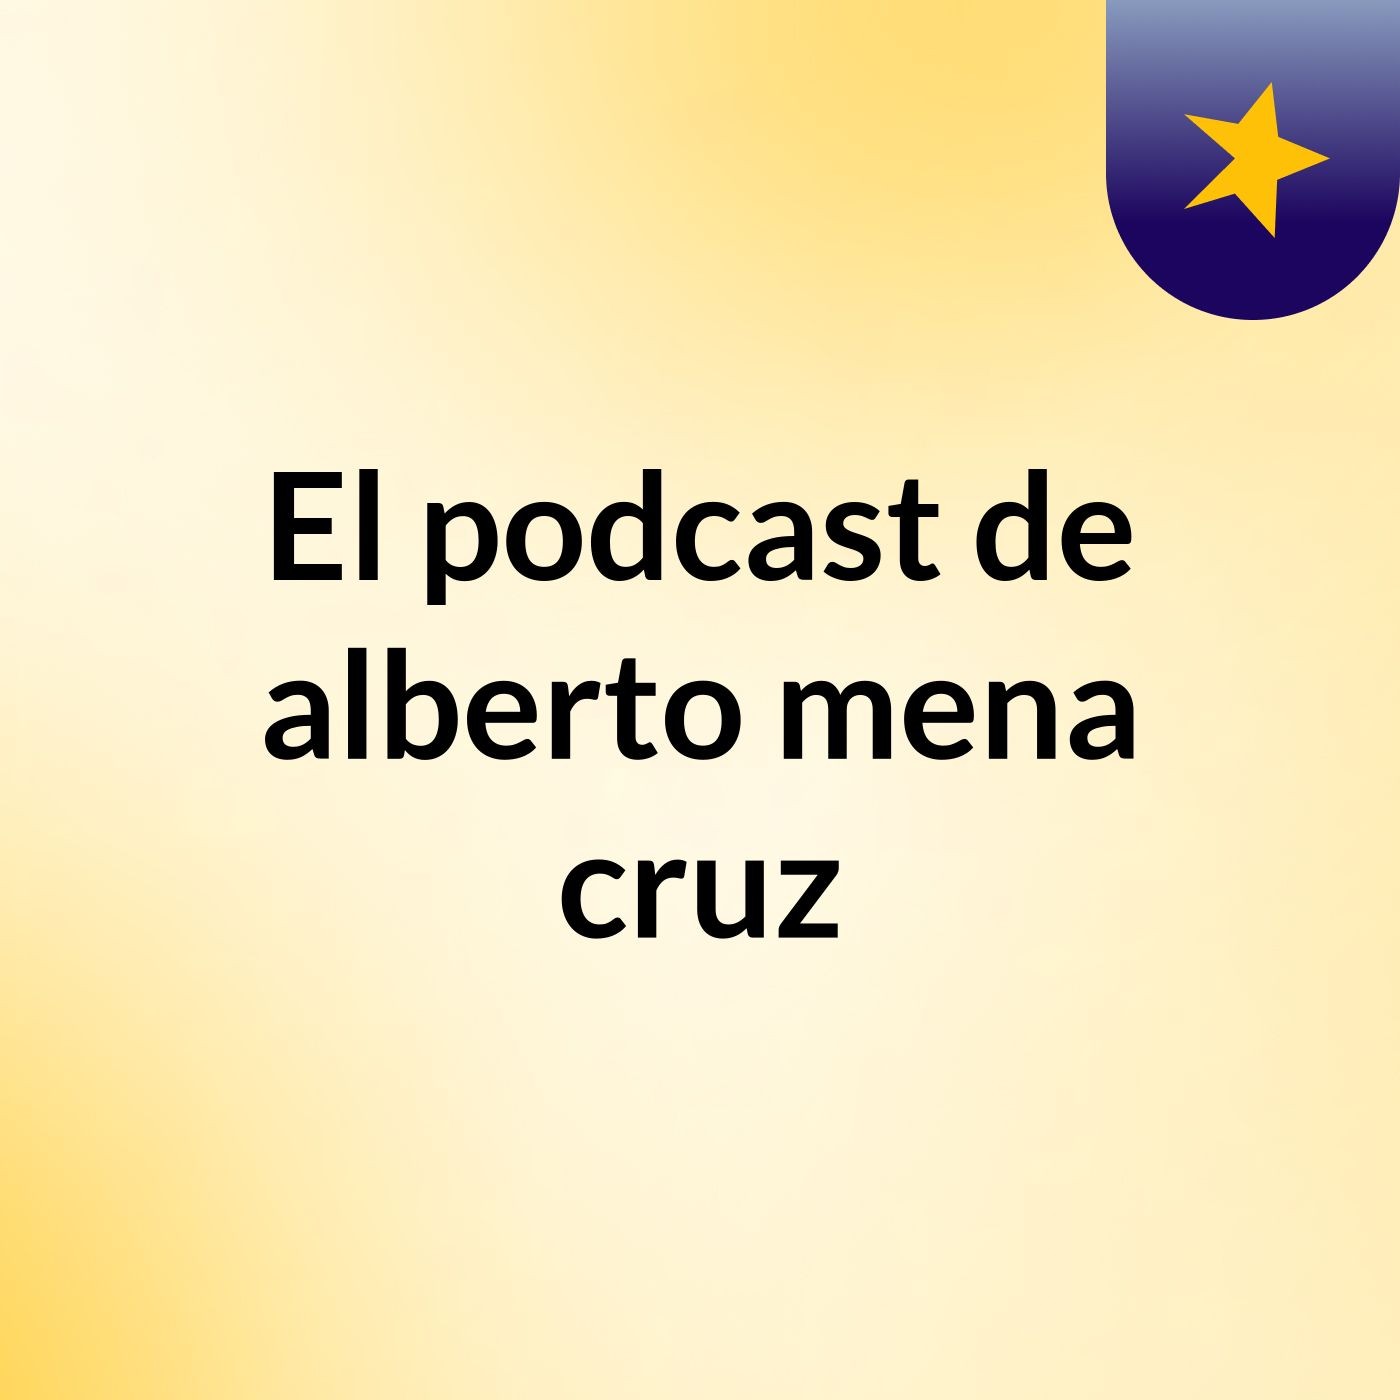 Episodio 4 - El podcast de alberto mena cruz